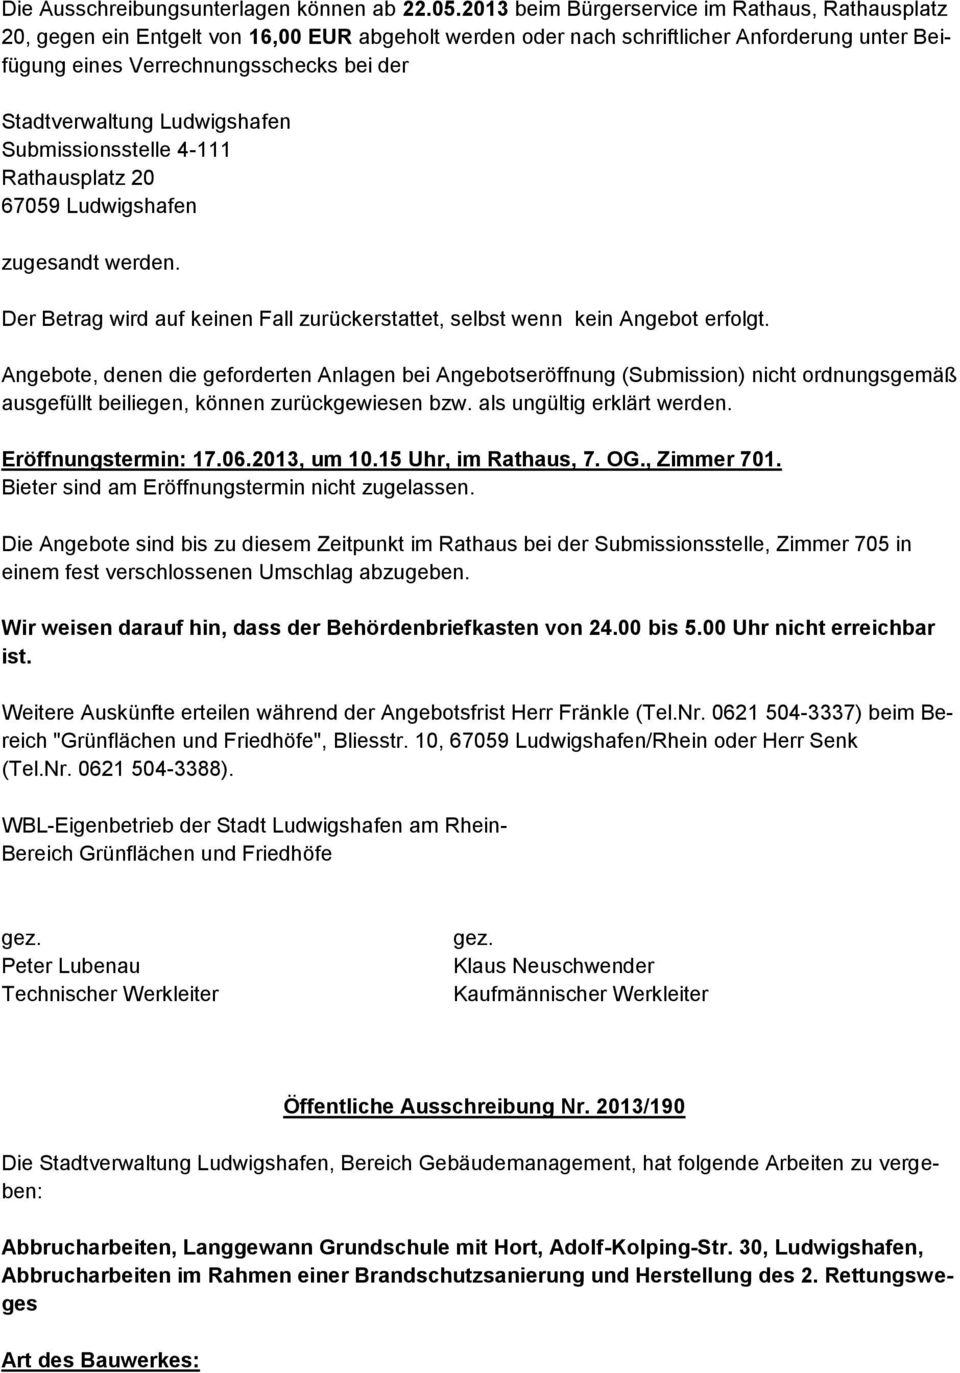 Stadtverwaltung Ludwigshafen Submissionsstelle 4-111 Rathausplatz 20 67059 Ludwigshafen zugesandt werden. Der Betrag wird auf keinen Fall zurückerstattet, selbst wenn kein Angebot erfolgt.